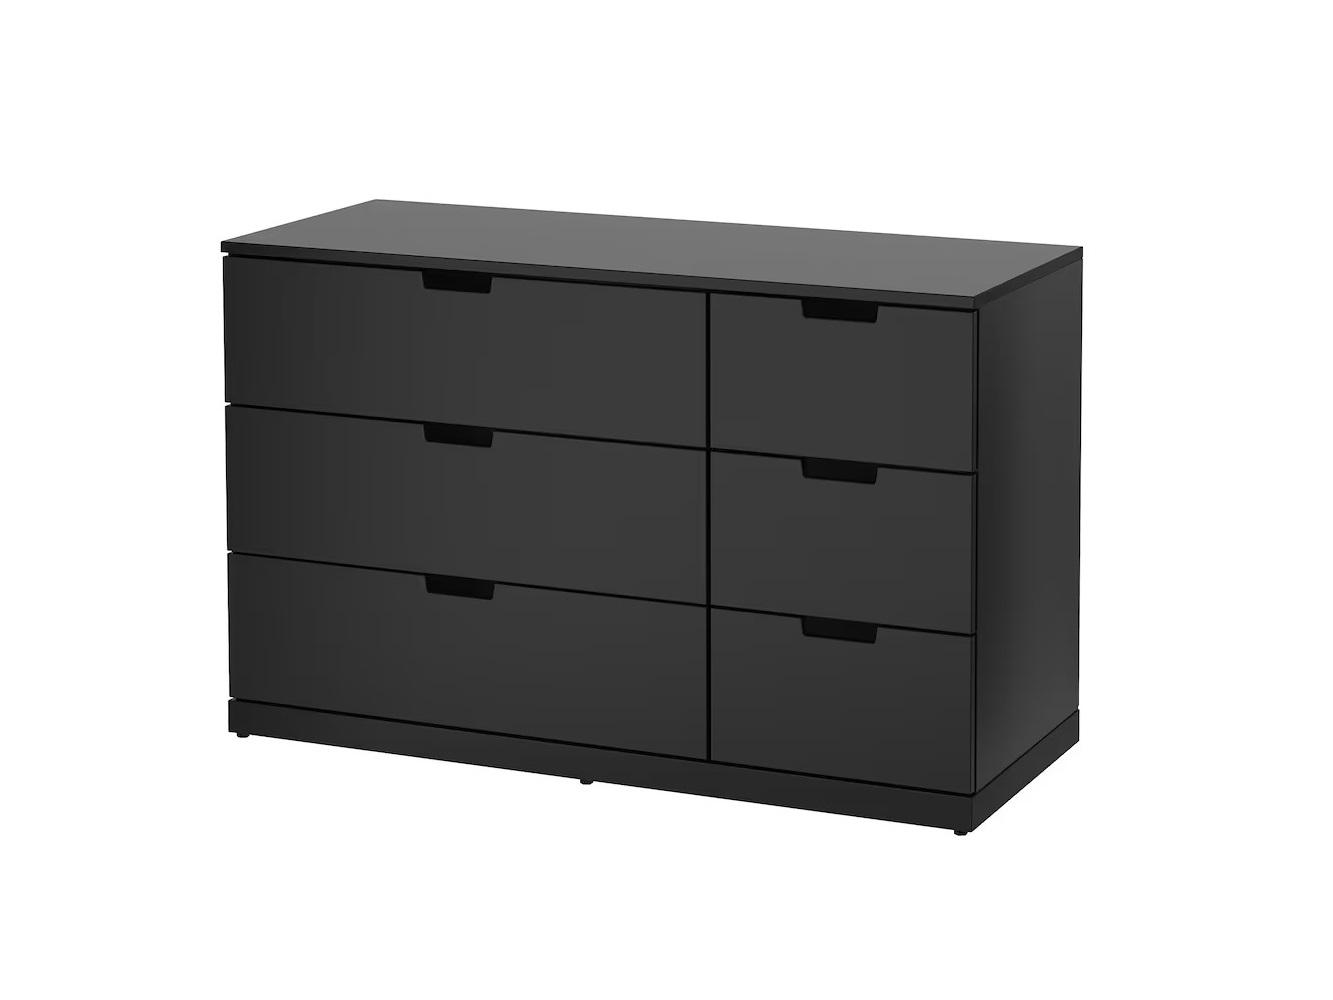 Комод Нордли 17 black ИКЕА (IKEA) изображение товара